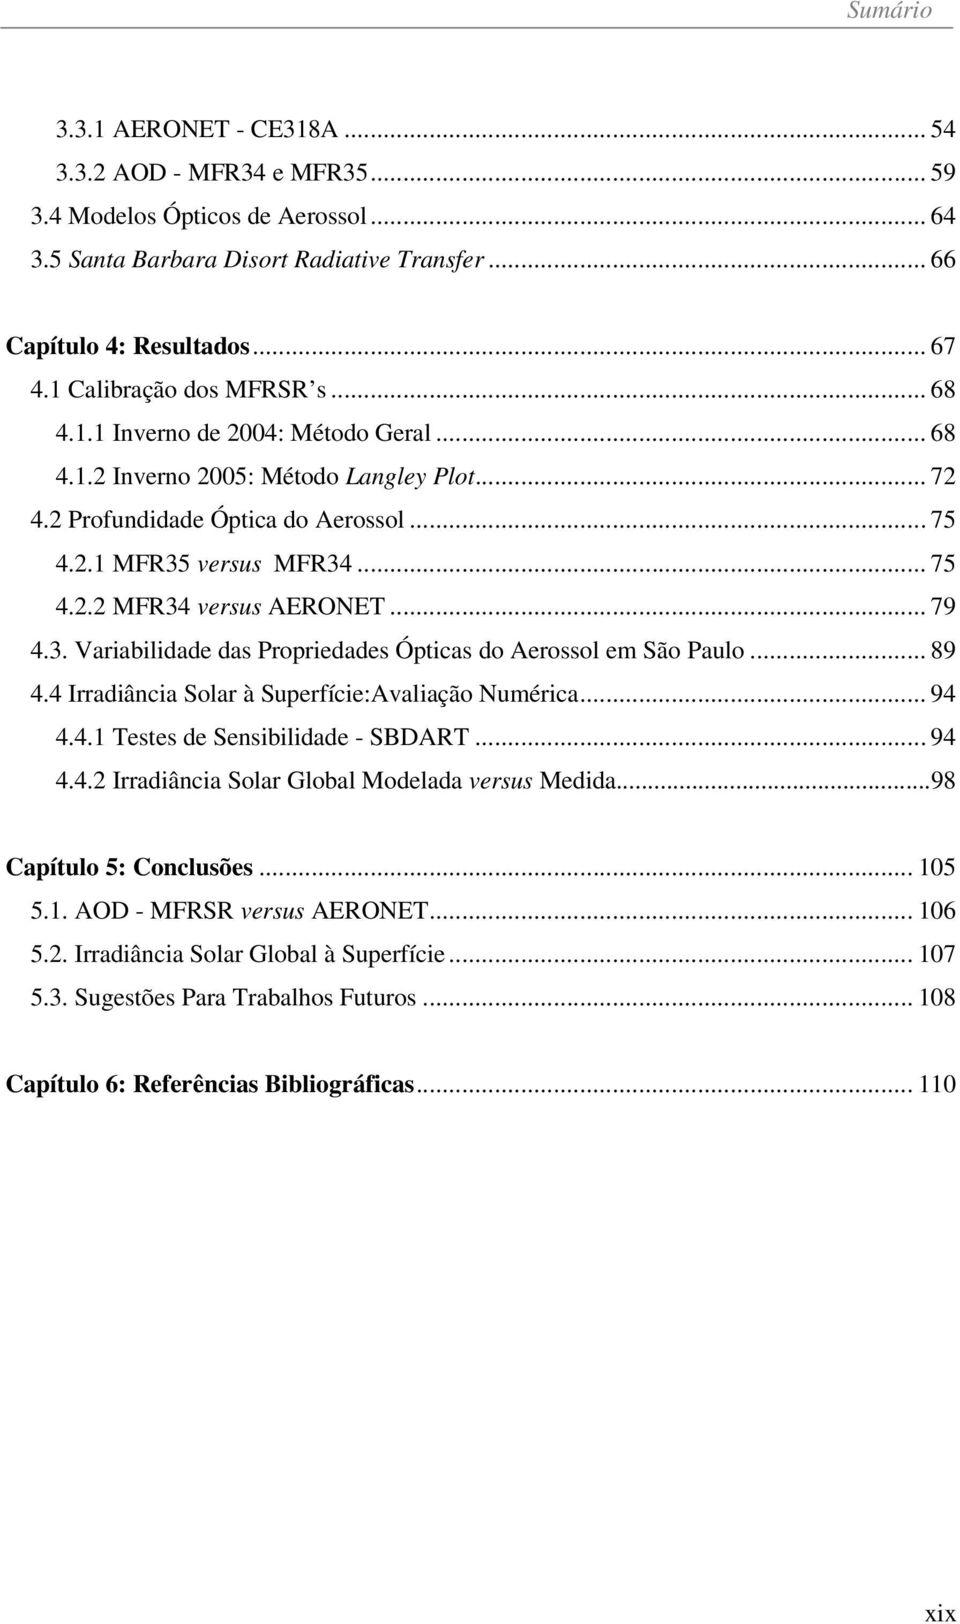 .. 79 4.3. Variabilidade das Propriedades Ópticas do Aerossol em São Paulo... 89 4.4 Irradiância Solar à Superfície:Avaliação Numérica... 94 4.4.1 Testes de Sensibilidade - SBDART... 94 4.4.2 Irradiância Solar Global Modelada versus Medida.